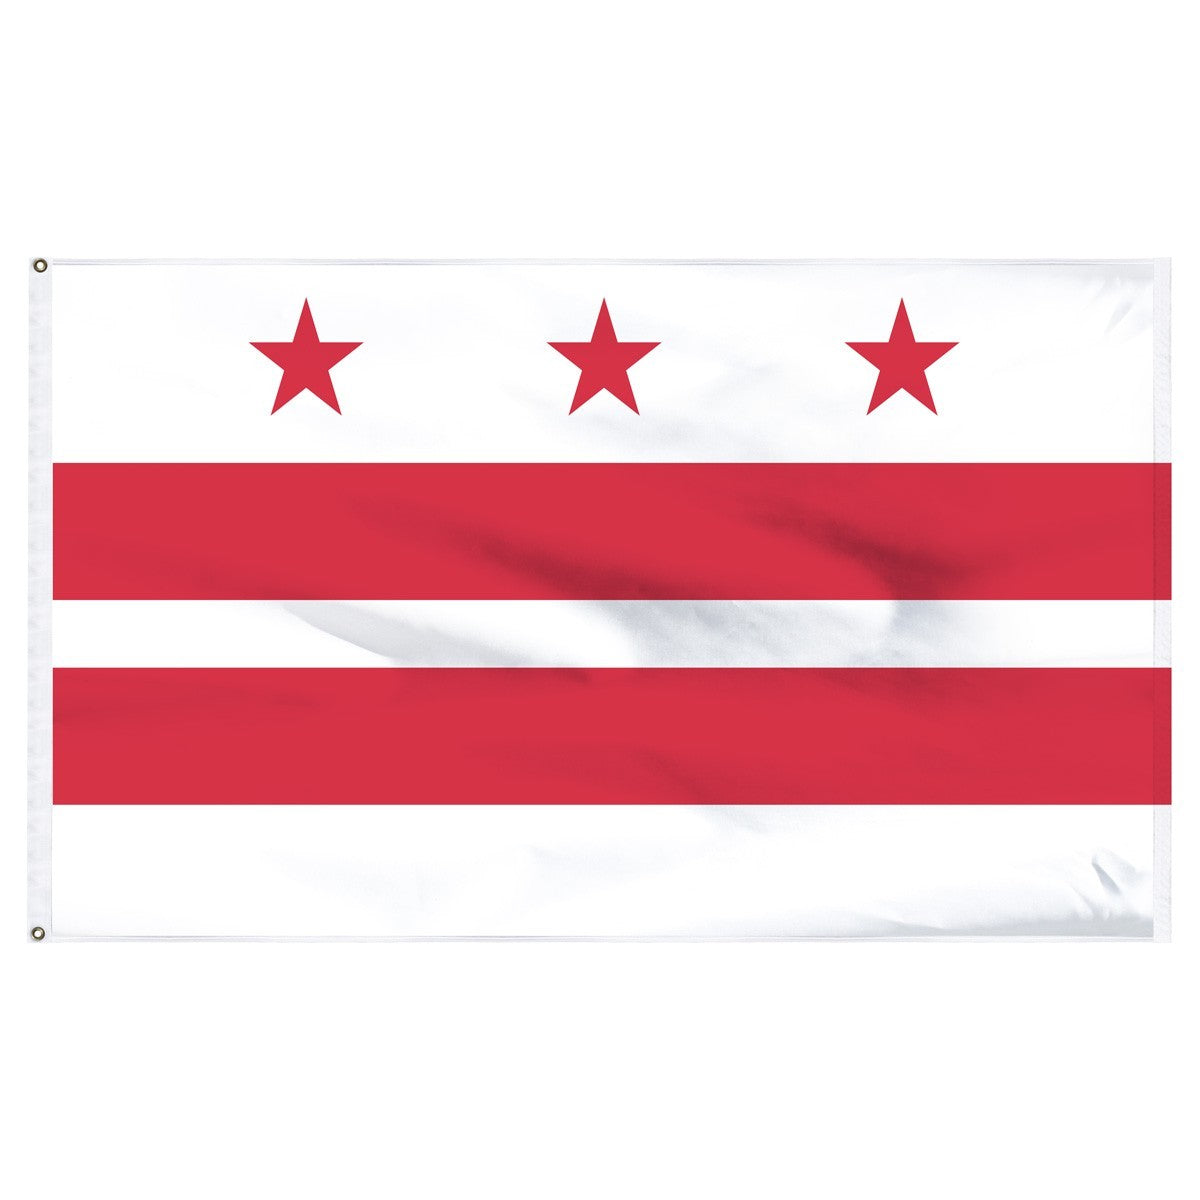 Bandera de poliéster interior del Distrito de Columbia (Washington DC) de 3 pies x 5 pies